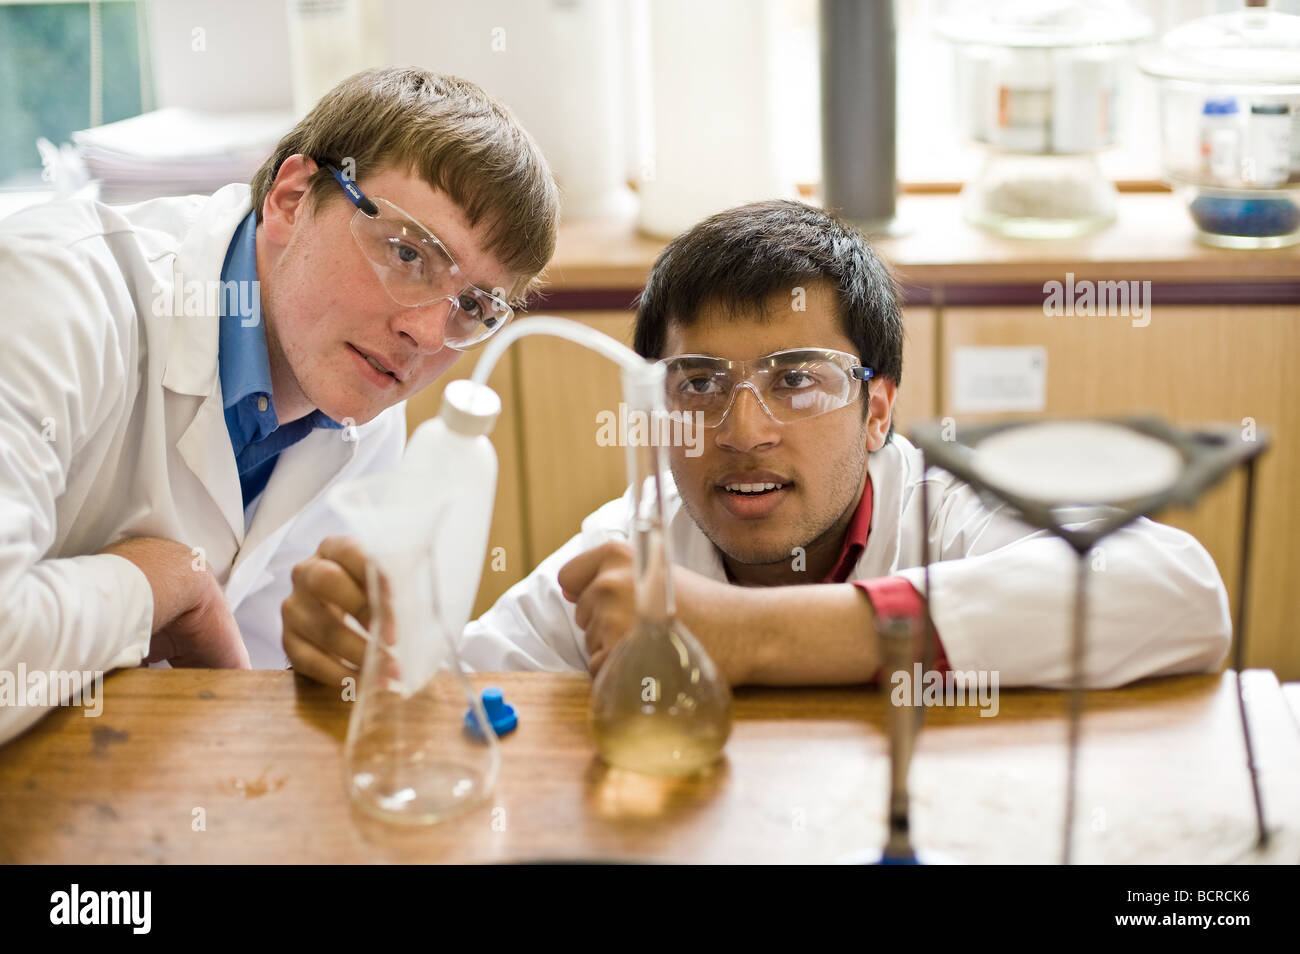 Escuela británica Inglaterra Educación de la Escuela Gramática - dos estudiantes varones que derraman líquido en un experimento en un laboratorio de ciencias de la escuela. Foto de stock